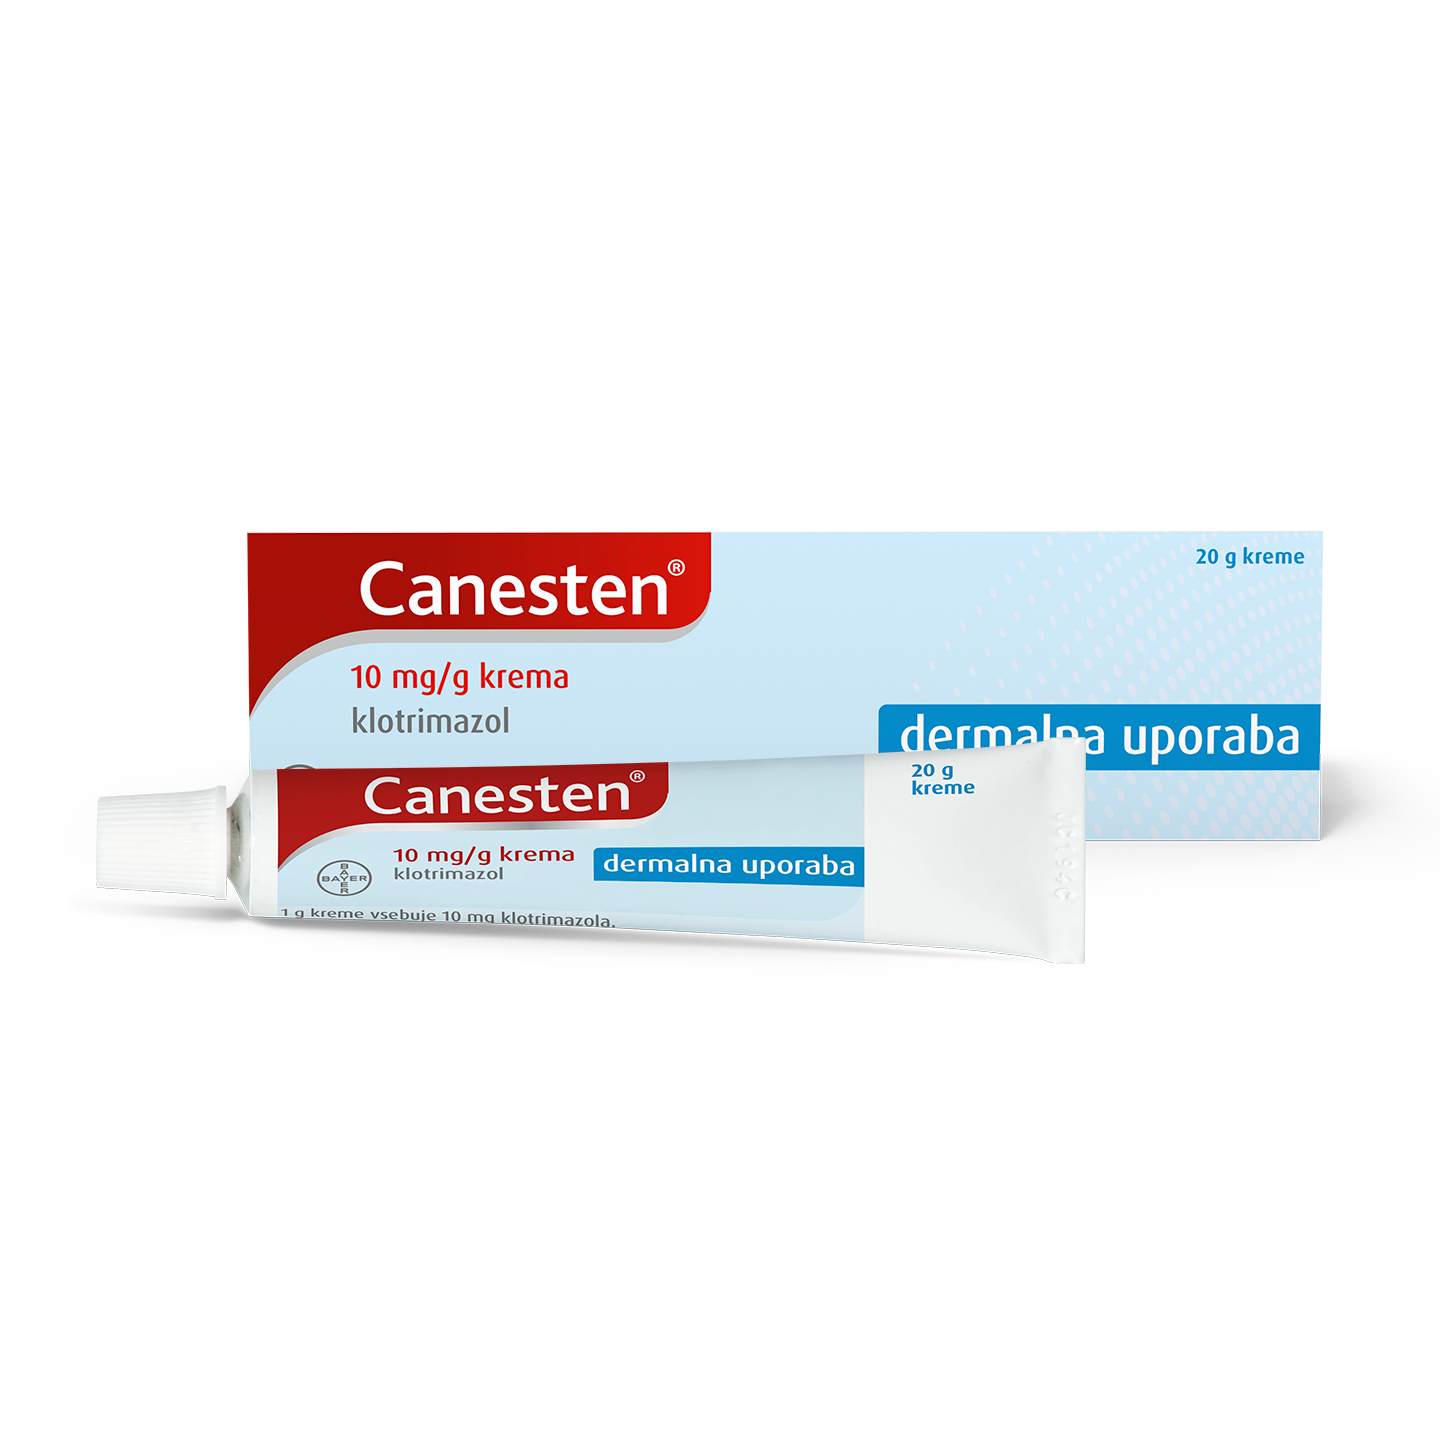 Canesten® 1 g krem për trajtimin e infeksionit mykotik të këmbëve dhe mykut të lëkurës